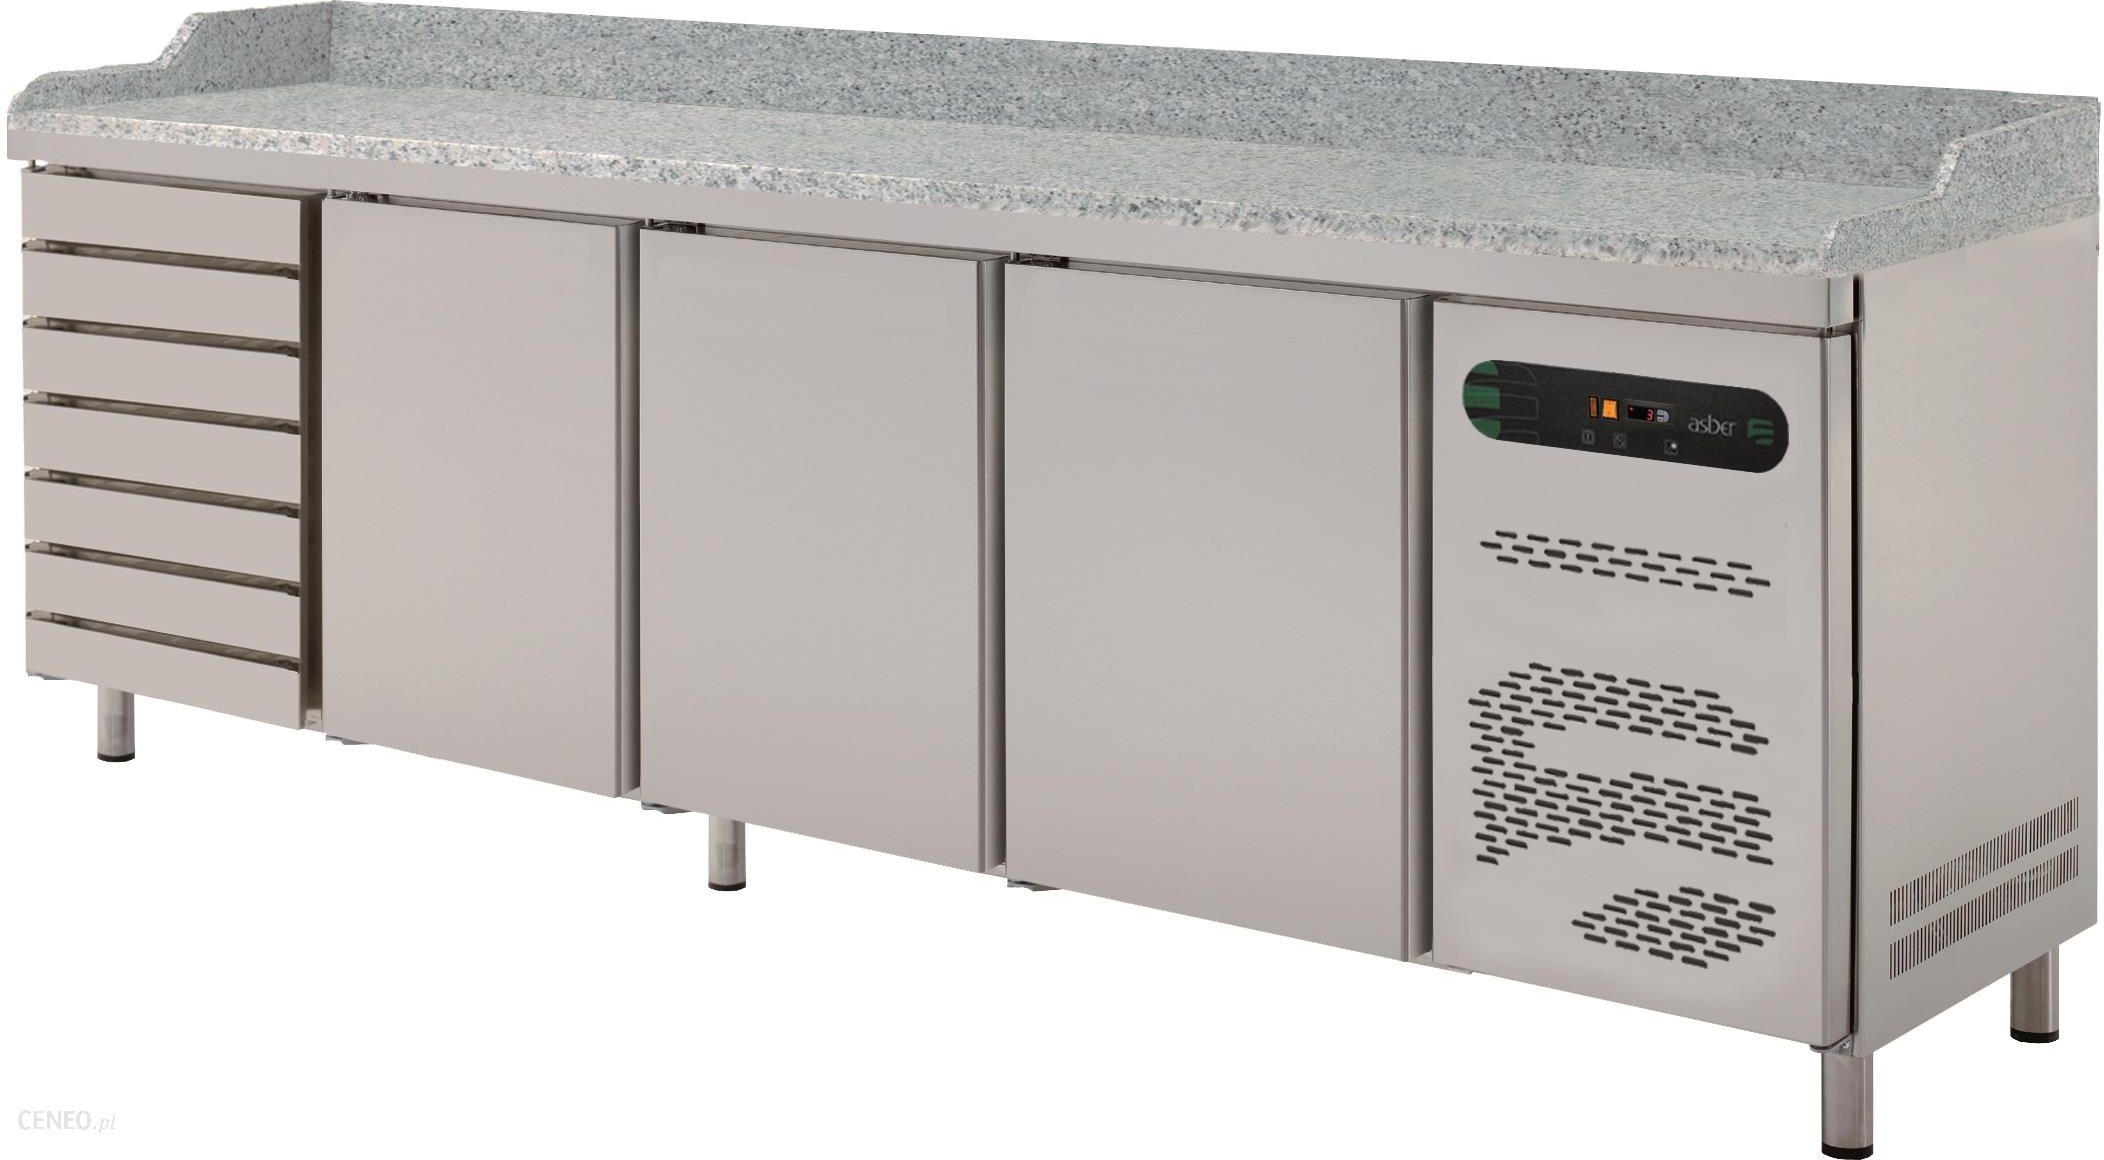 Охлаждаемый стол Cryspi СШС-0,3 GN-1850